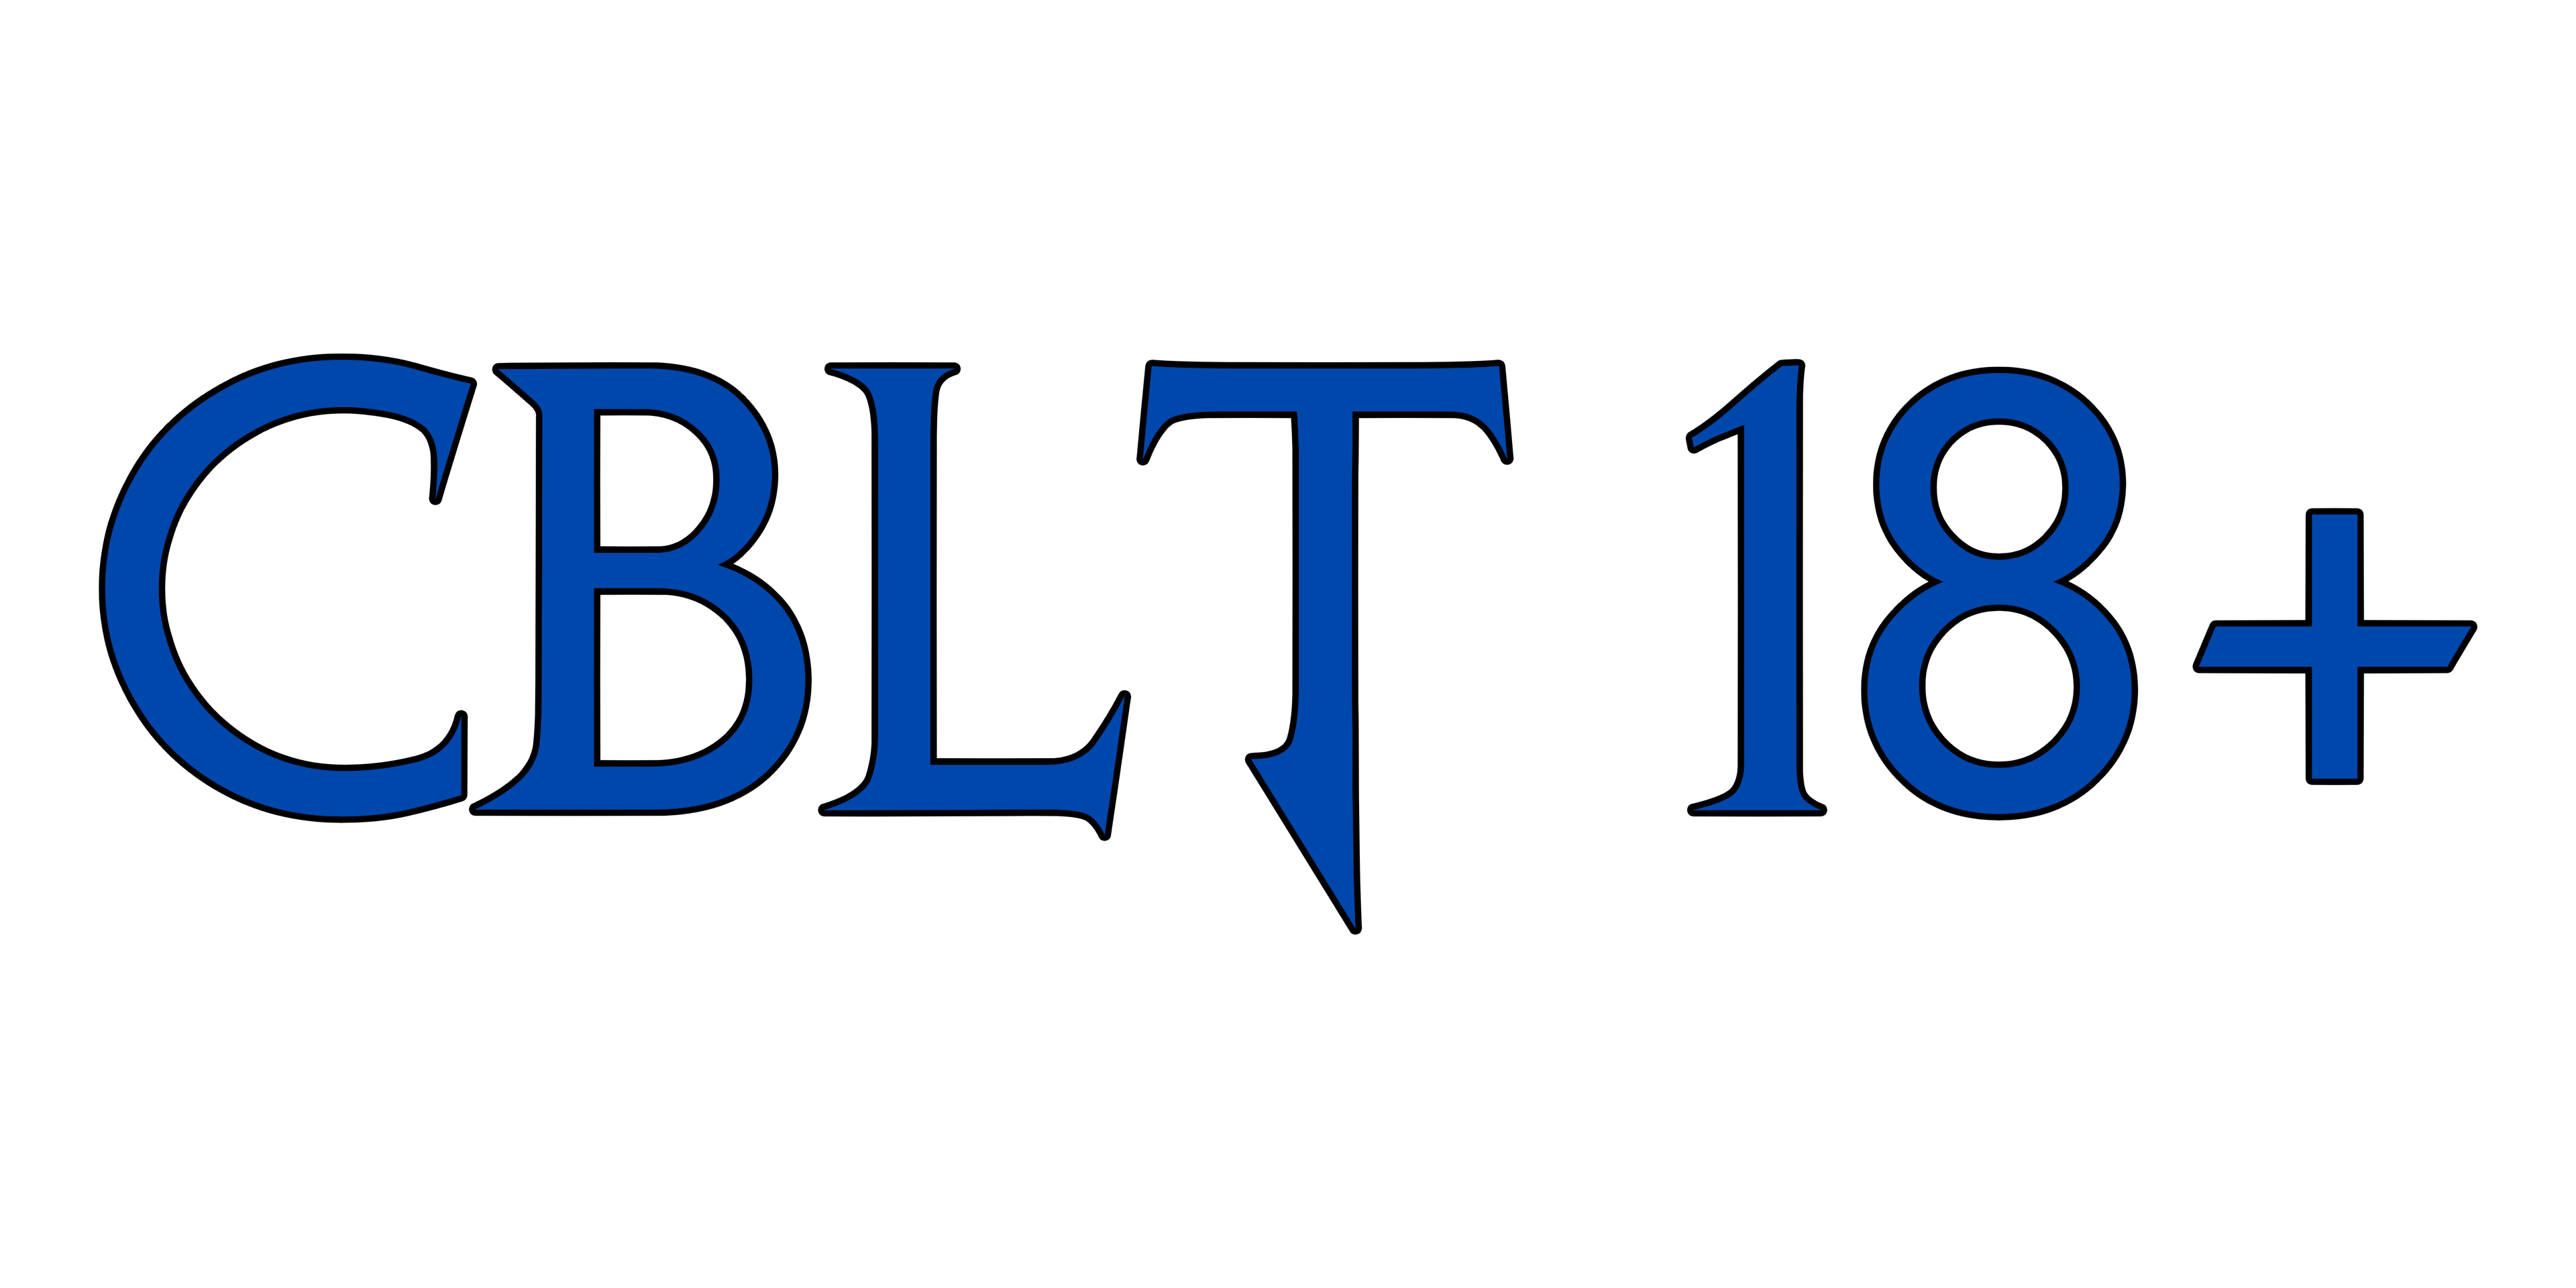 CBLT 18+